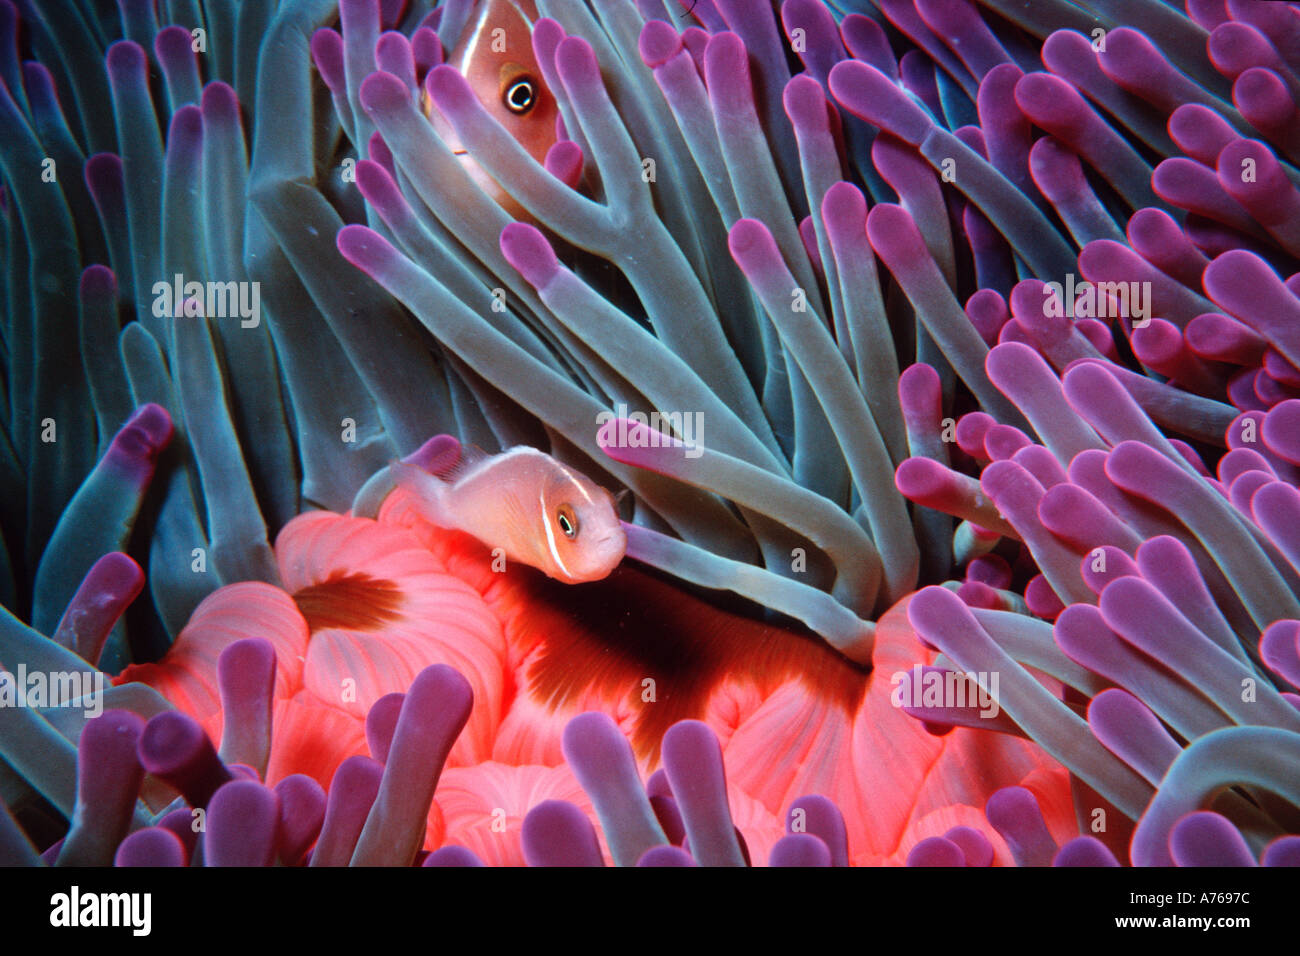 Bambini e adulti anemonefish rosa in anemone marittimo Amphiprion perideraion Fila Reef Port Vila Vanuatu S Pacific Foto Stock